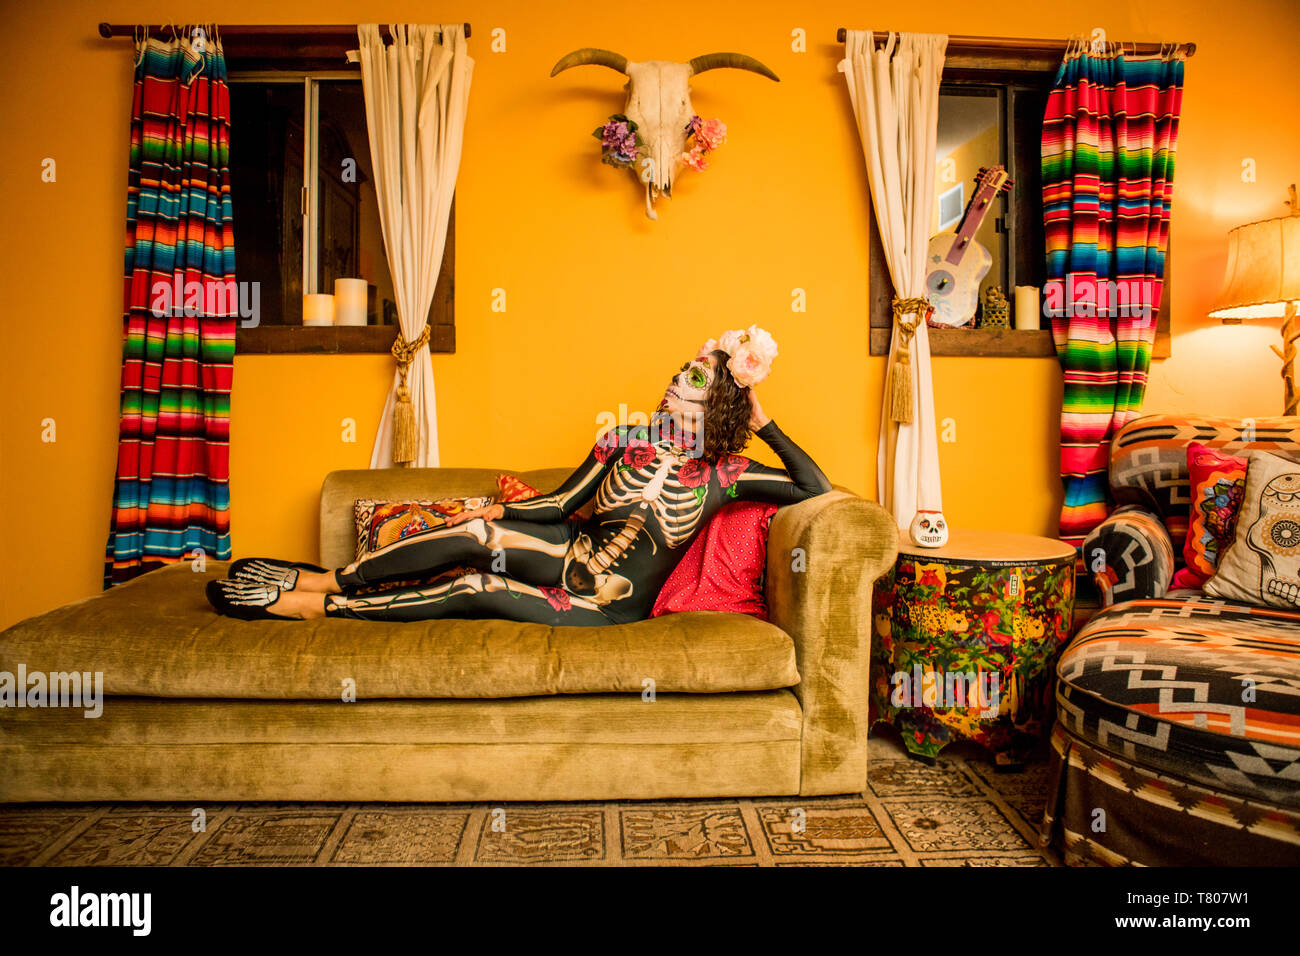 Femme de Dia de los Muertos le maquillage et costume, fête le Jour des morts dans le désert, en Californie, États-Unis d'Amérique, Amérique du Nord Banque D'Images